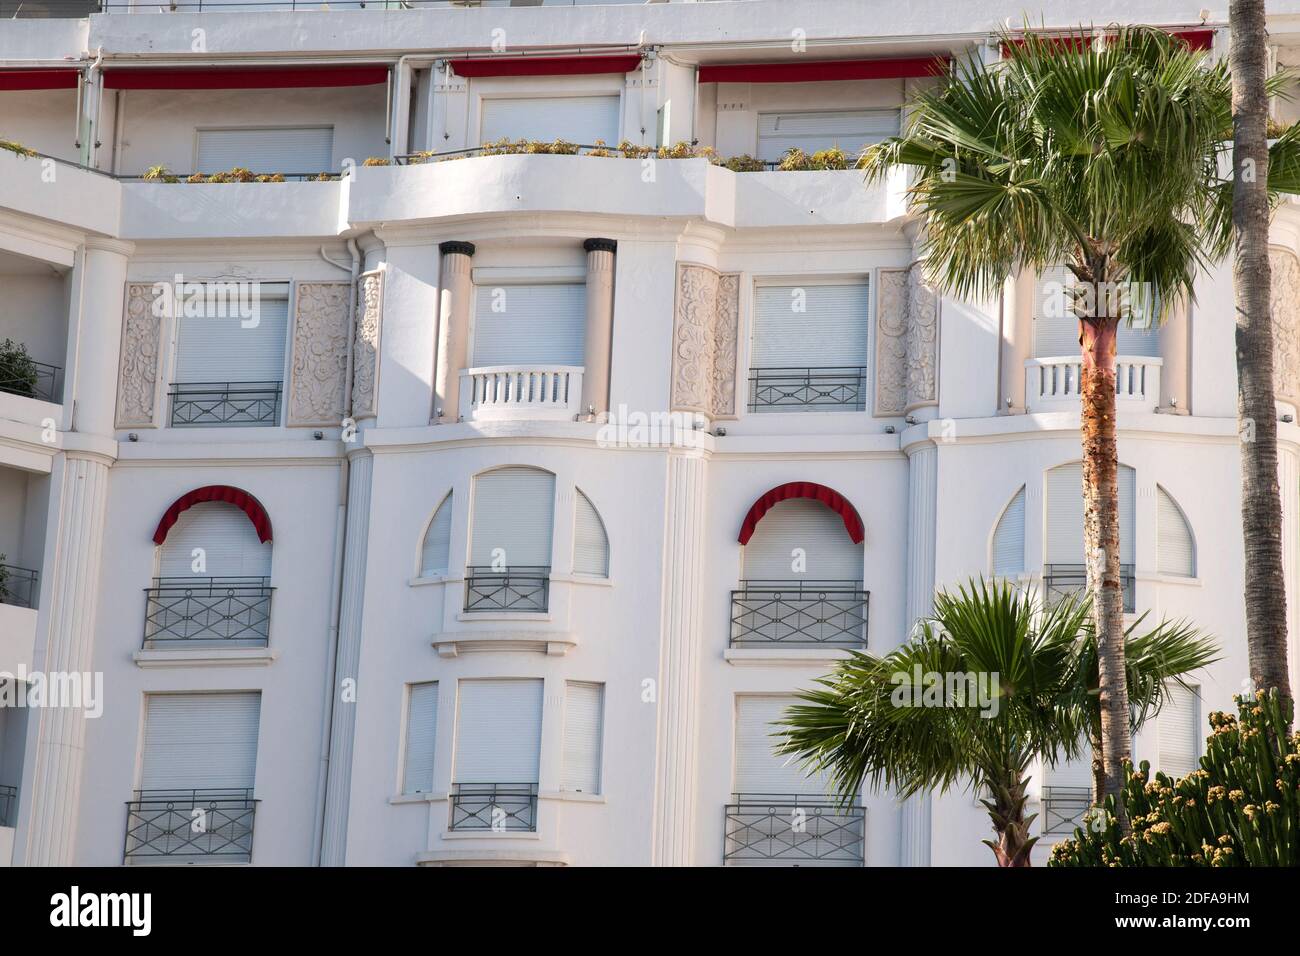 Vista del Majestic Barriere Hotel chiuso, come il Festival del Cinema di Cannes non sta accadendo, come è stato previsto dal 12 maggio al 22 maggio 2020 a Cannes, Francia, il 17 maggio 2020. La Francia ha iniziato ad allentare gradualmente le misure di blocco e le restrizioni in mezzo alla pandemia della COVID-19. Foto di Aurore Marechal/ABACAPRESS.COM Foto Stock